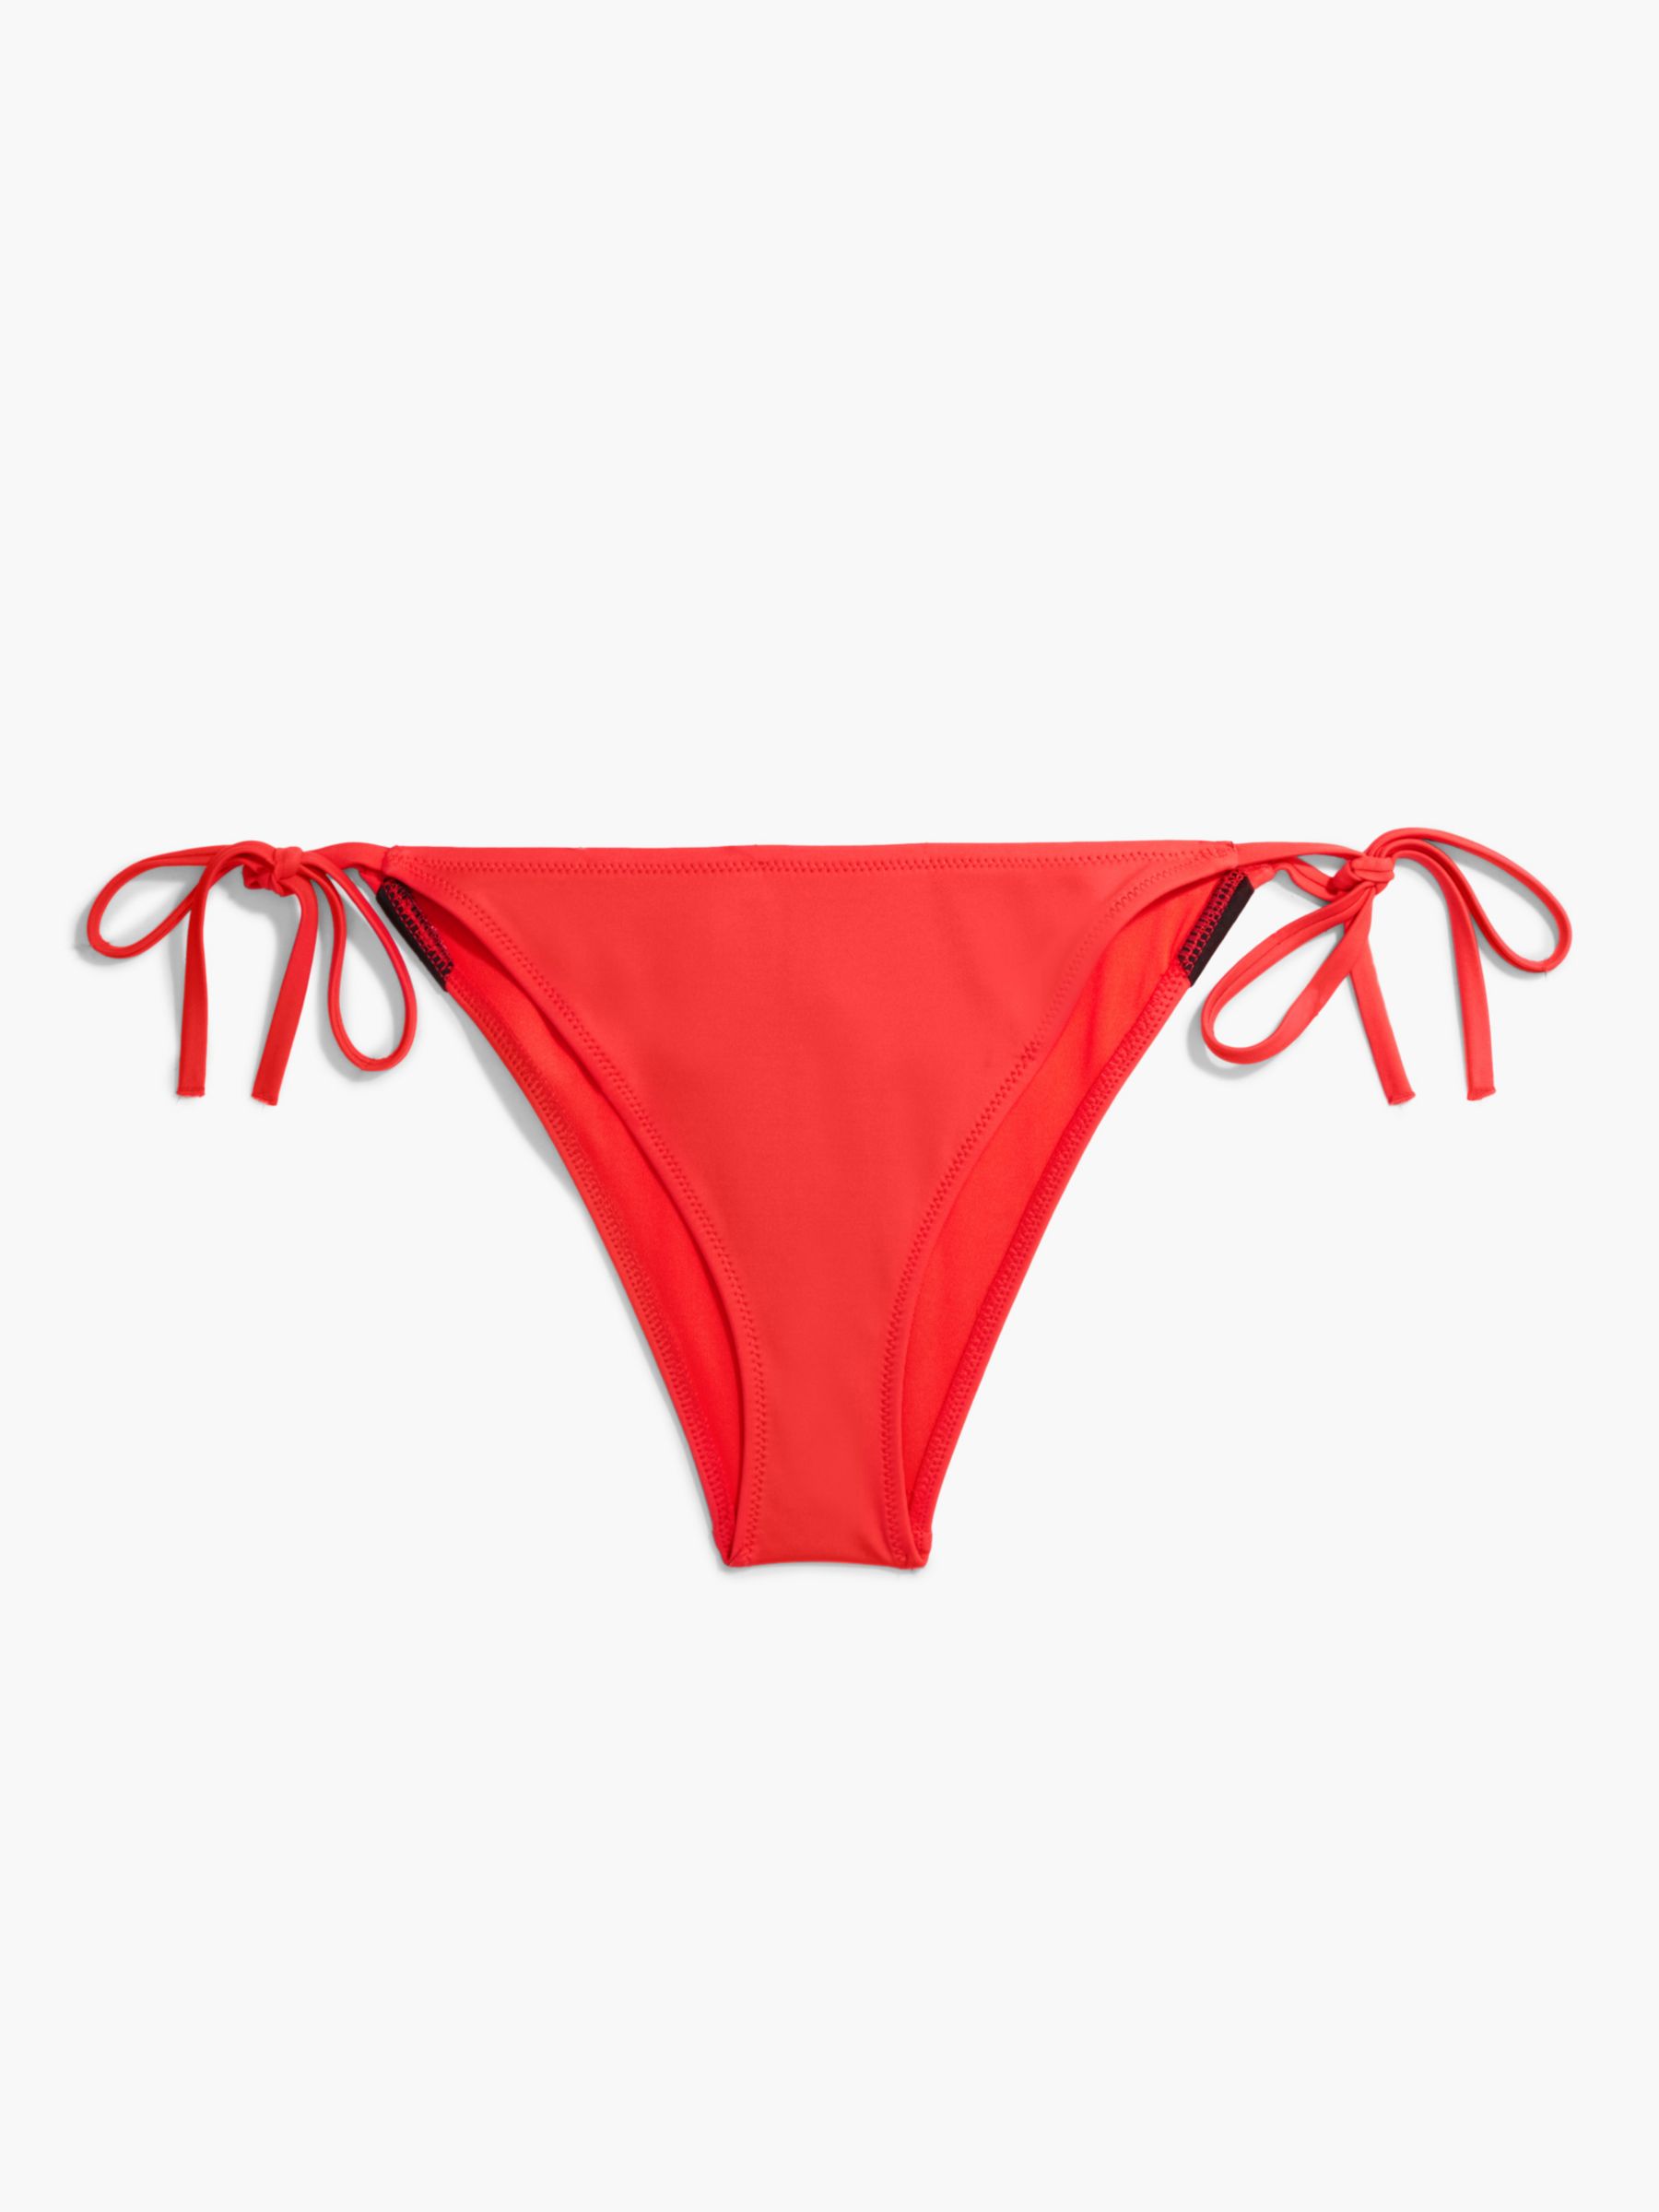 Calvin Klein String Side Tie Bikini Brief, Bright Vermillion, L